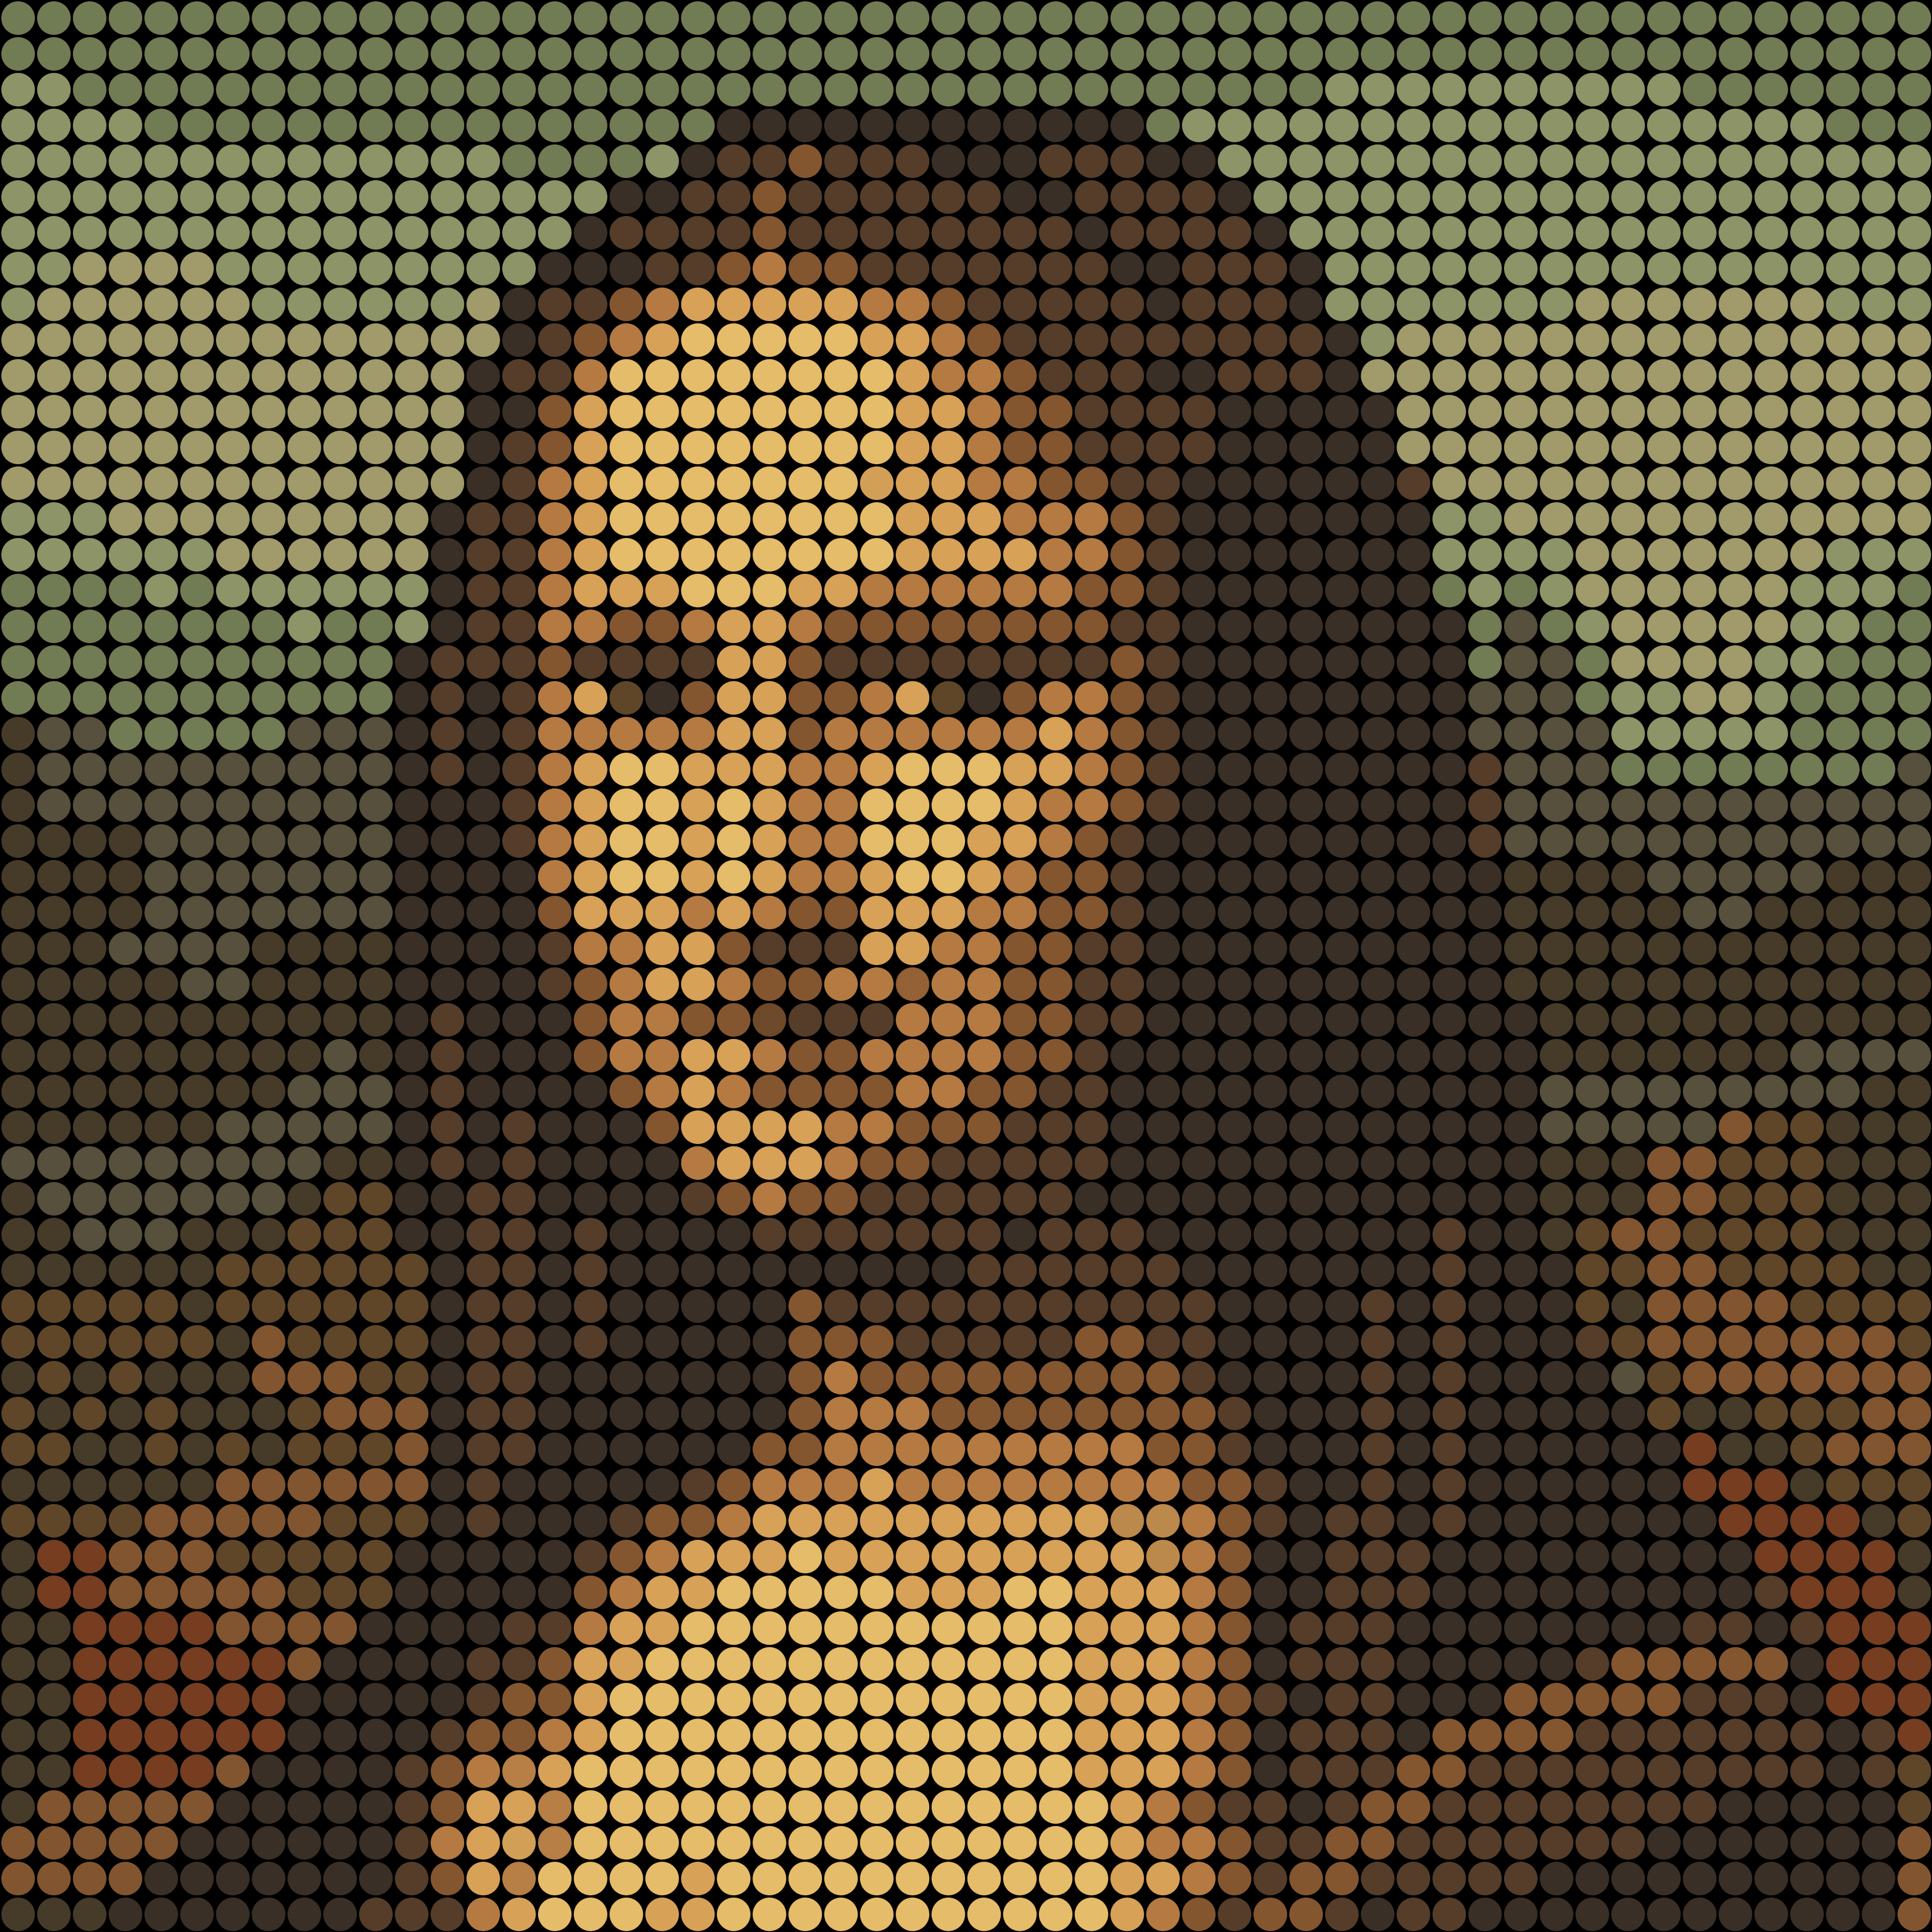 PIXEL Mona Lisa #1/100